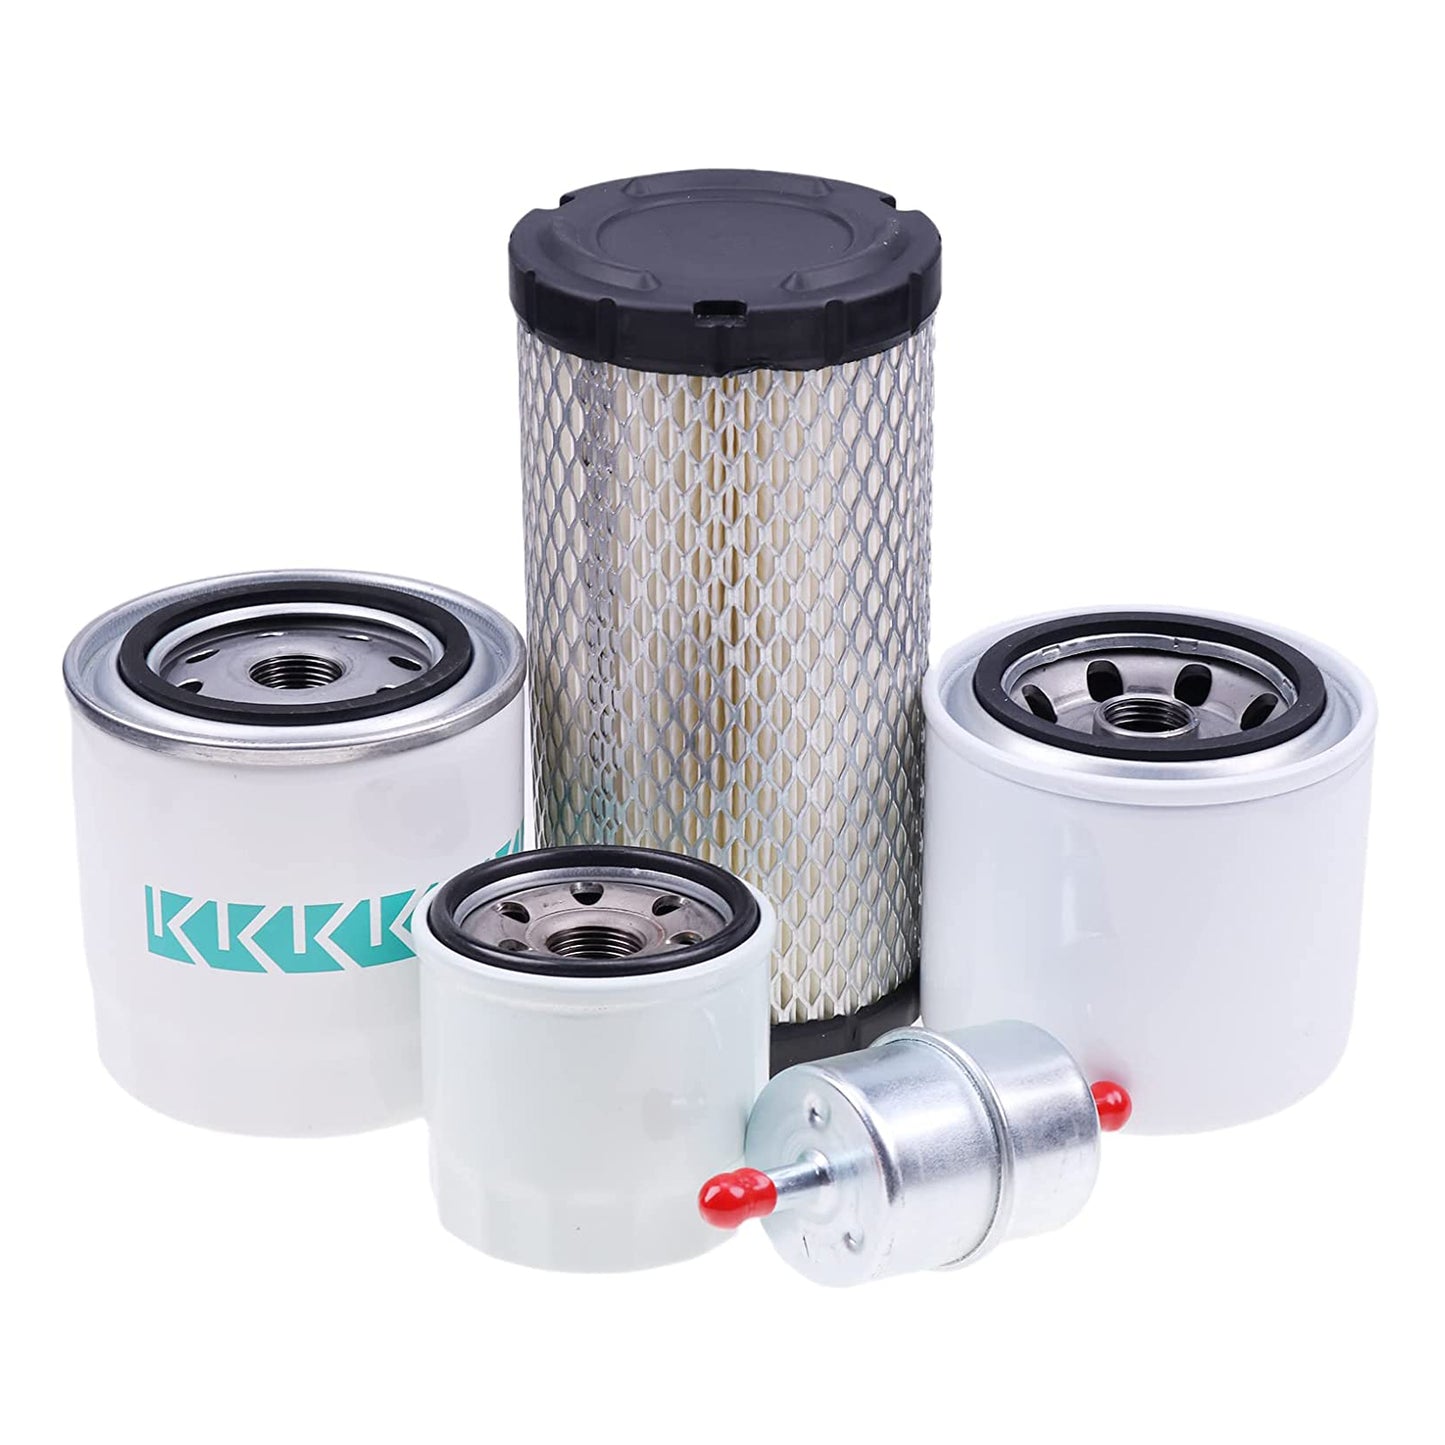 Nuevo kit de filtro de mantenimiento 77700-01819 compatible con Kubota RTV900